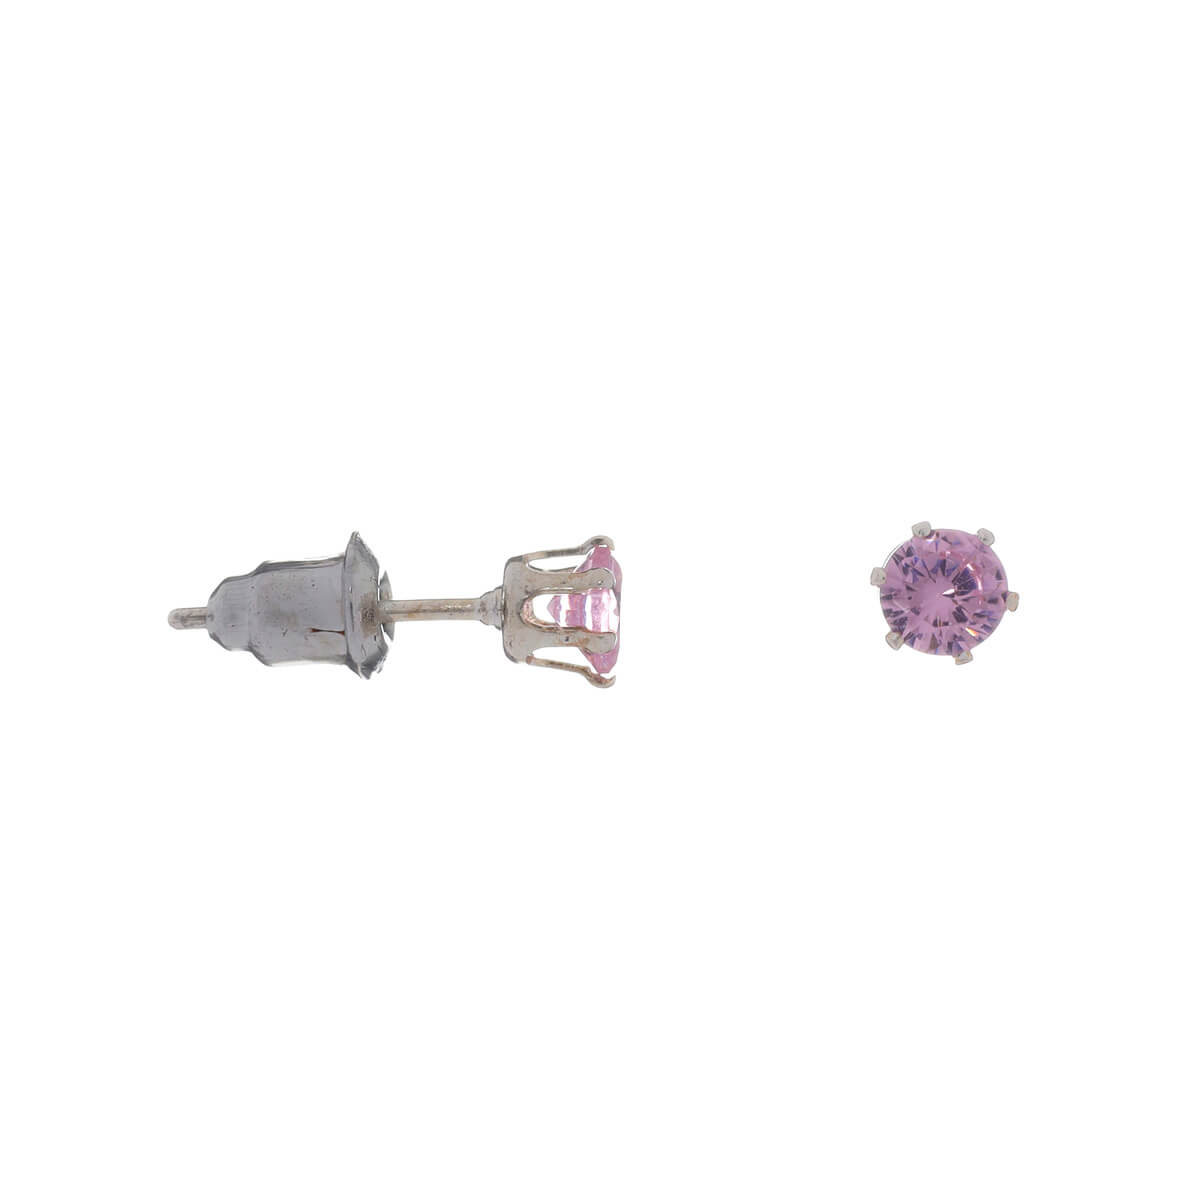 Glass stone earrings 4mm